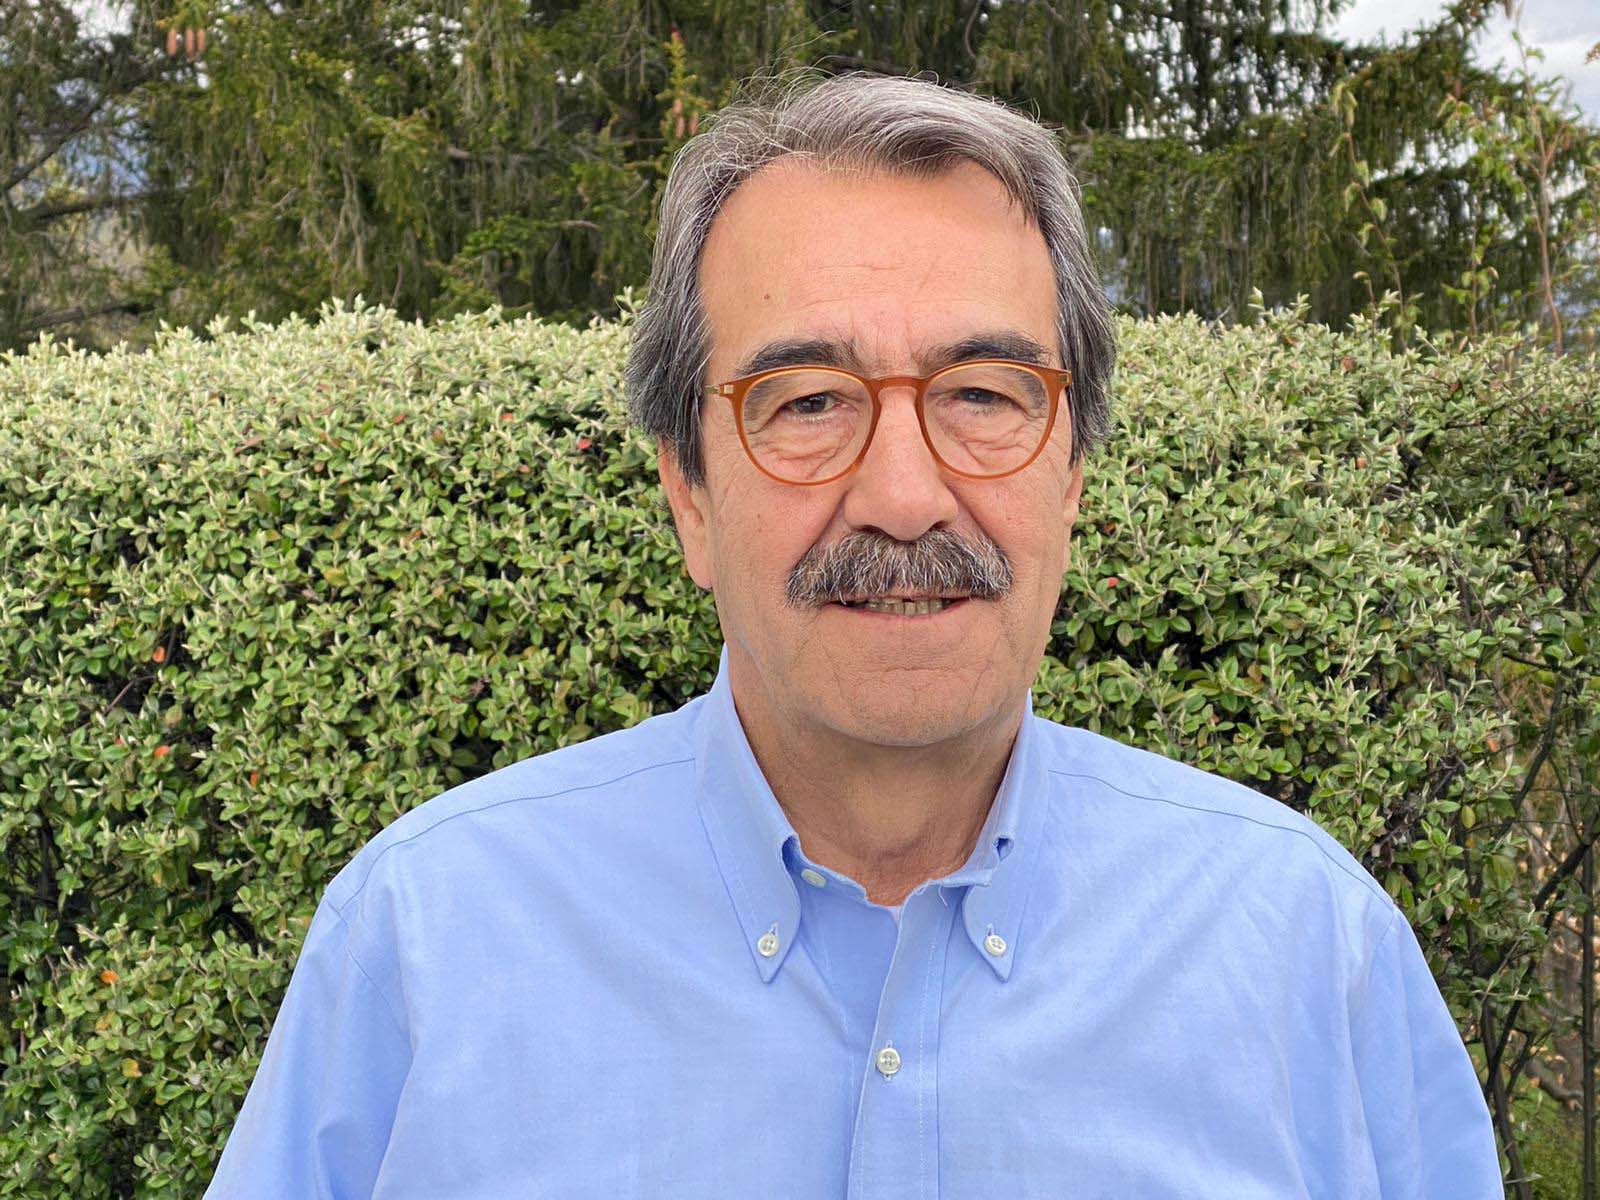 El economista y presidente de Analistas Financieros Internacionales, Emilio Ontiveros, entrevistado en ElPlural.com, analiza la crisis sin precedentes provocada por el coronavirus